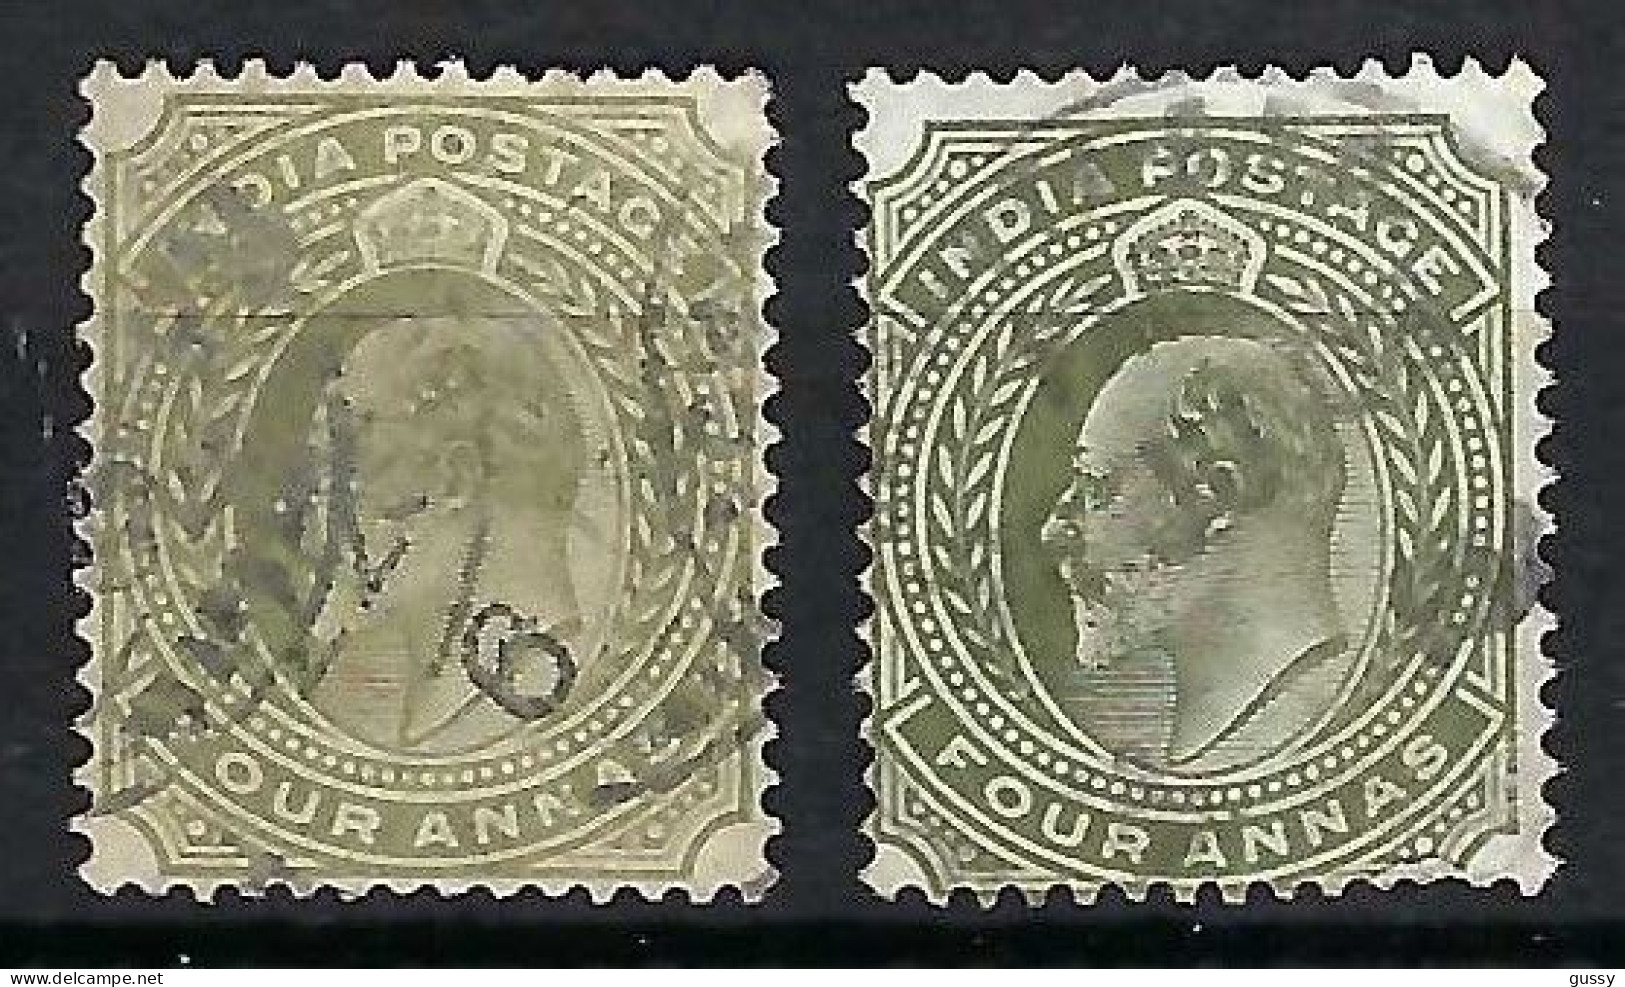 INDE ANGLAISE Ca.1902-09: 2x Le Y&T 63, 2 Nuances - 1902-11 Roi Edouard VII